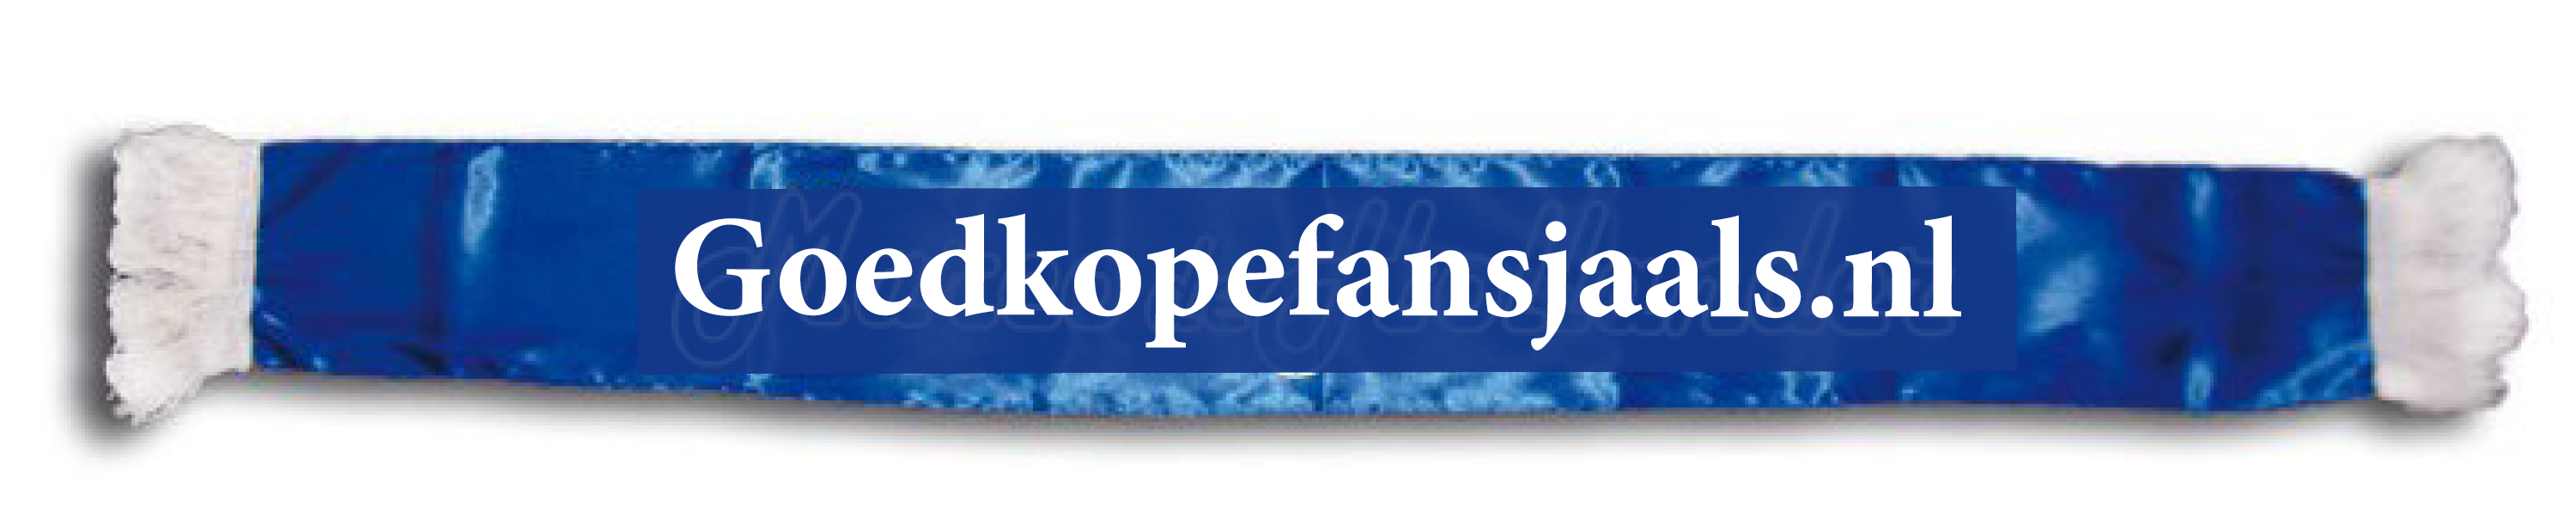 goedkope fansjaal fansjaals artiestensjaal artiestenfansjaal laten maken laten bedrukken bestellen kopen helmond supportersjaals zwaaisjaals blauw